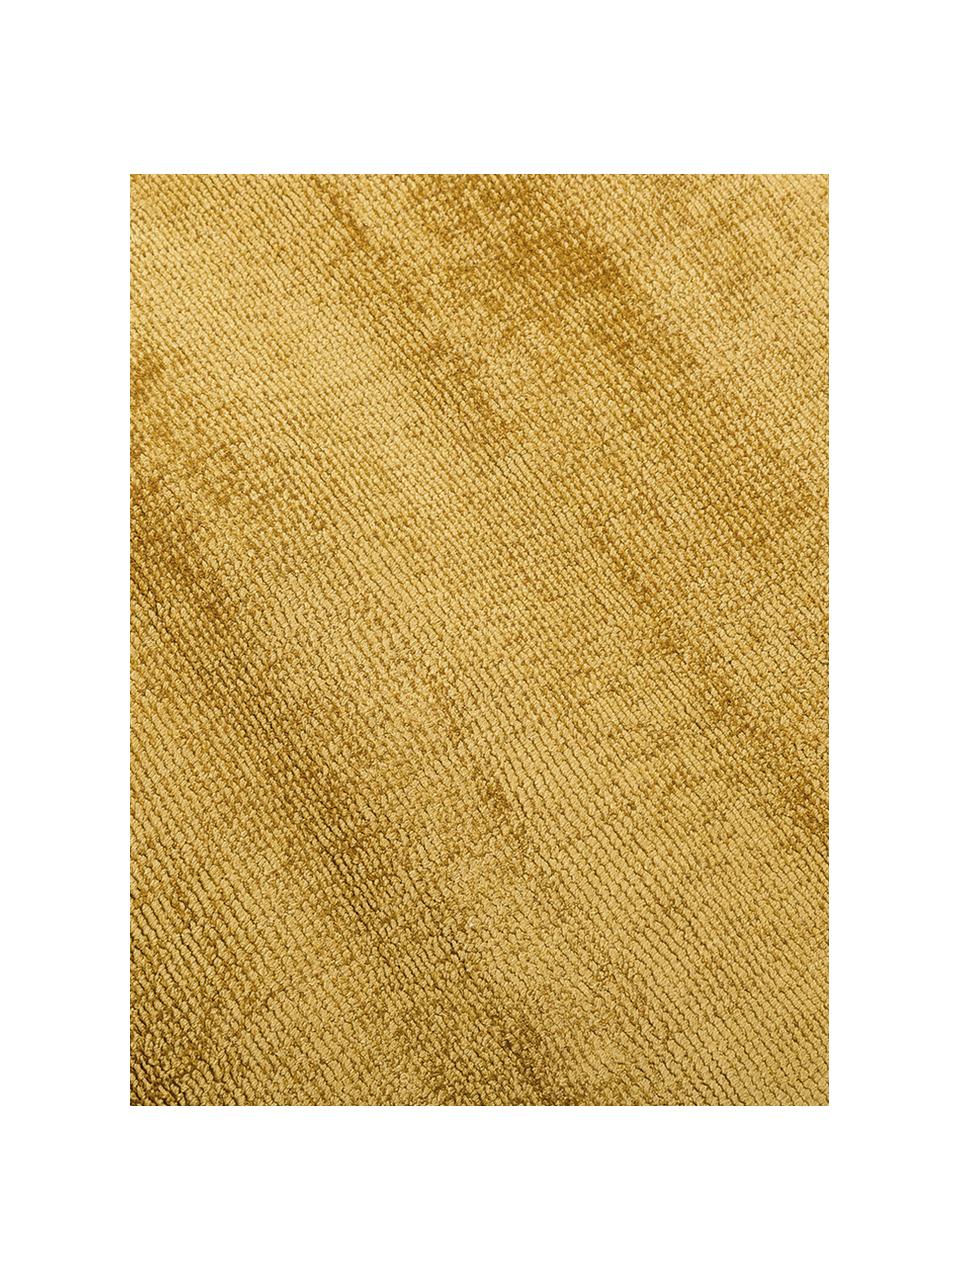 Ručně tkaný viskózový koberec Jane Diamond, Hořčičná žlutá